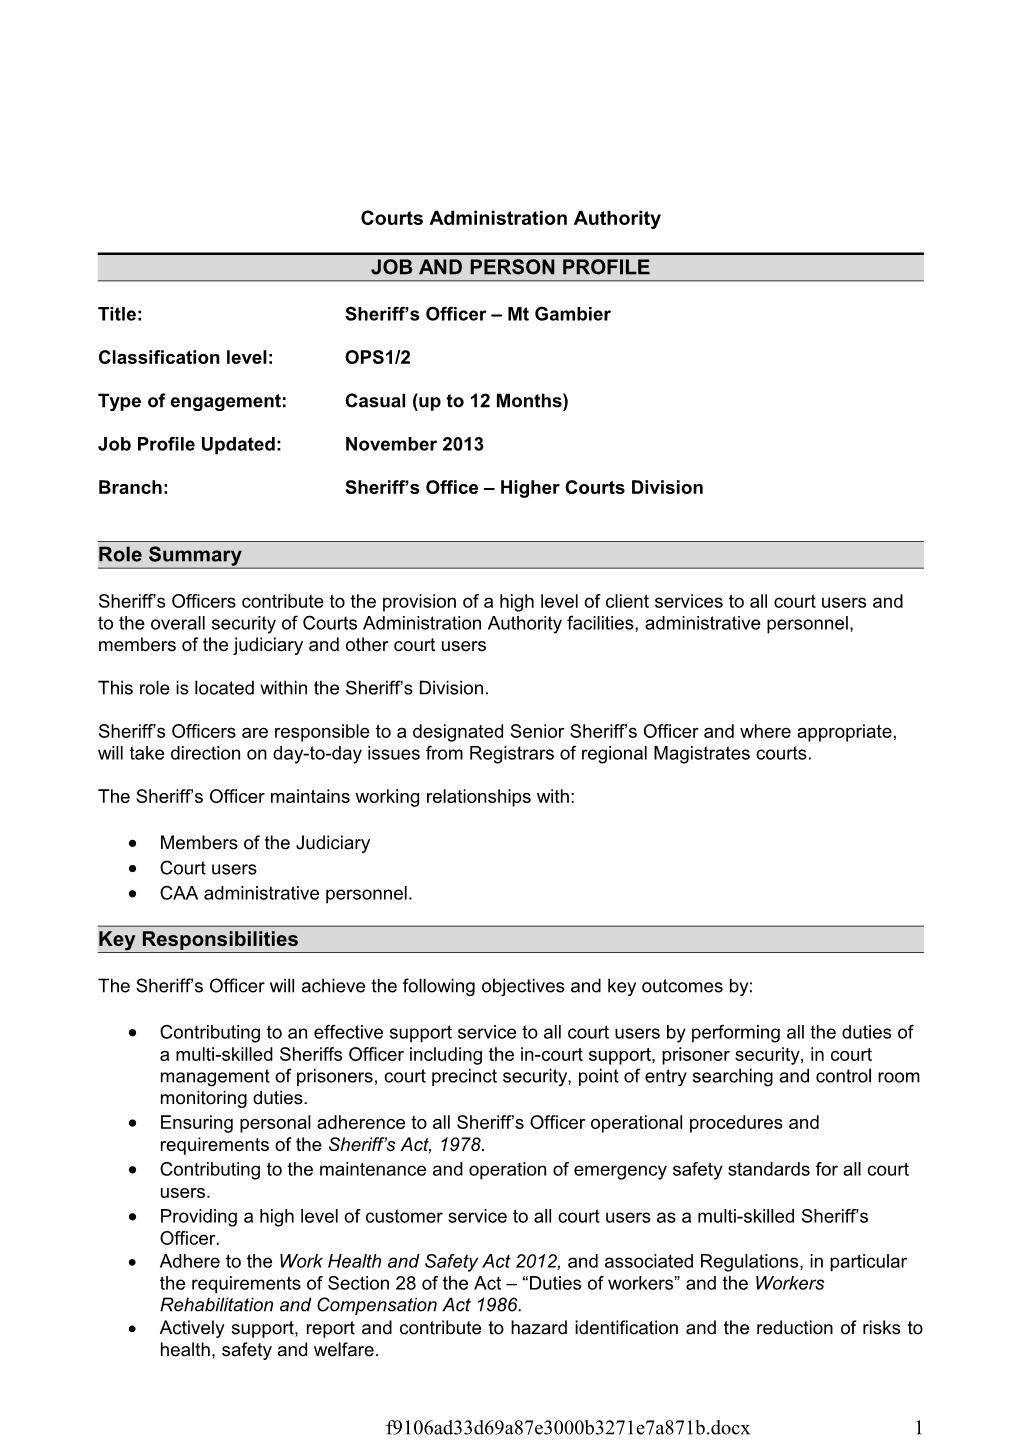 Job and Person Profile